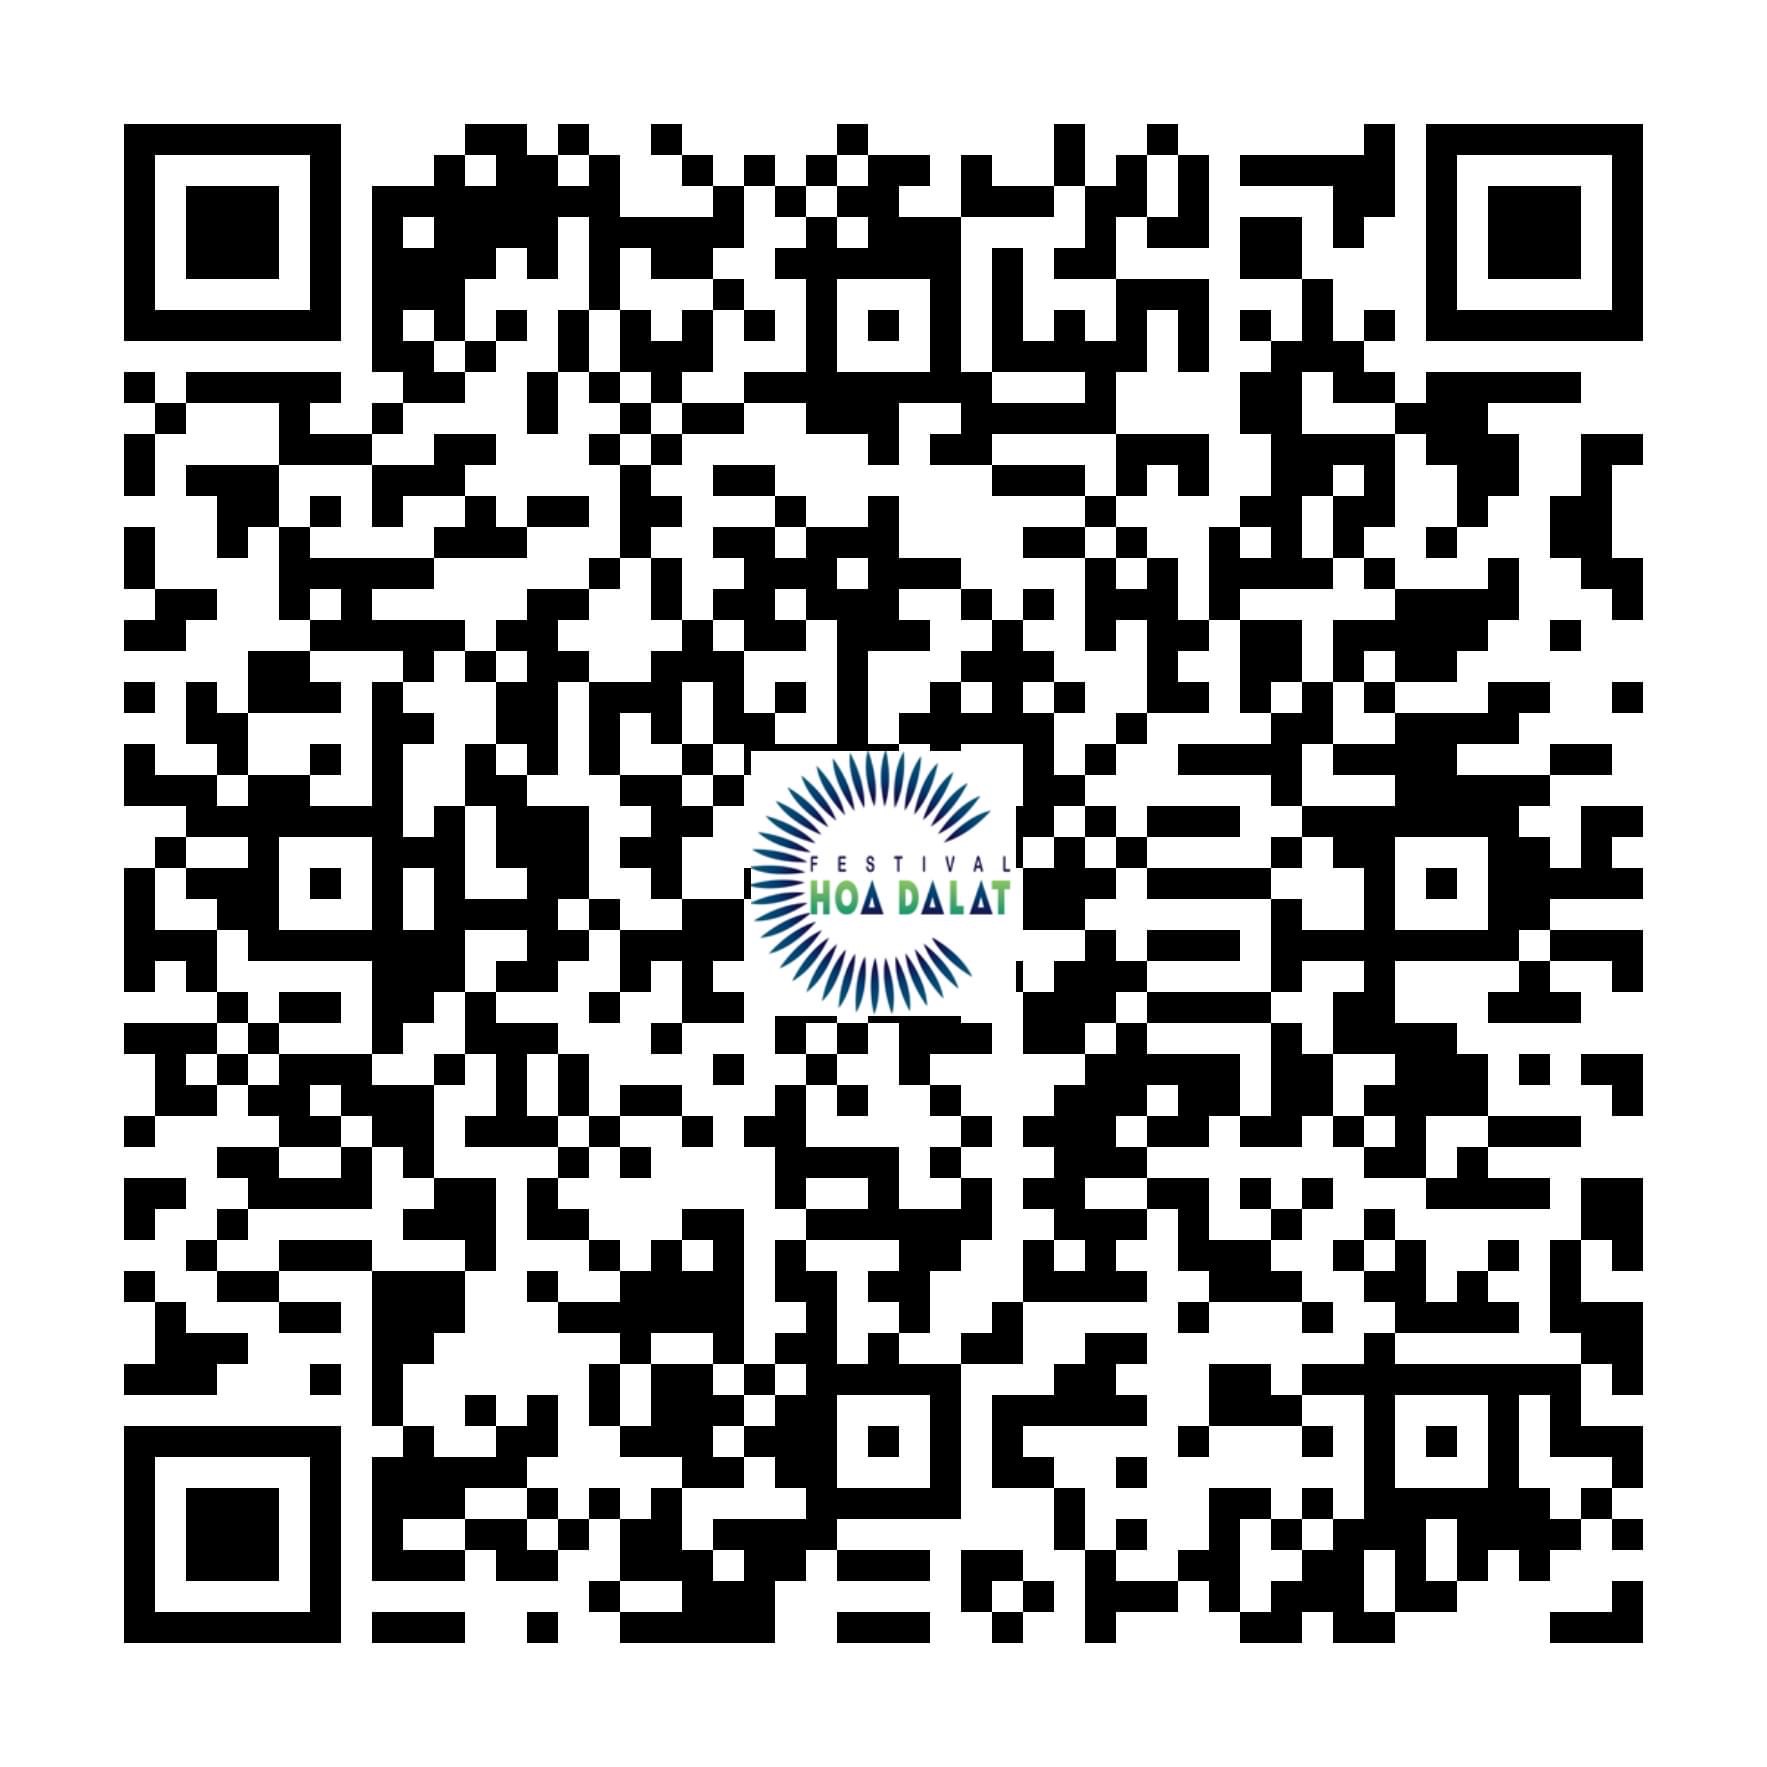 Công bố QR code cập nhật thông tin Festival Hoa 2022